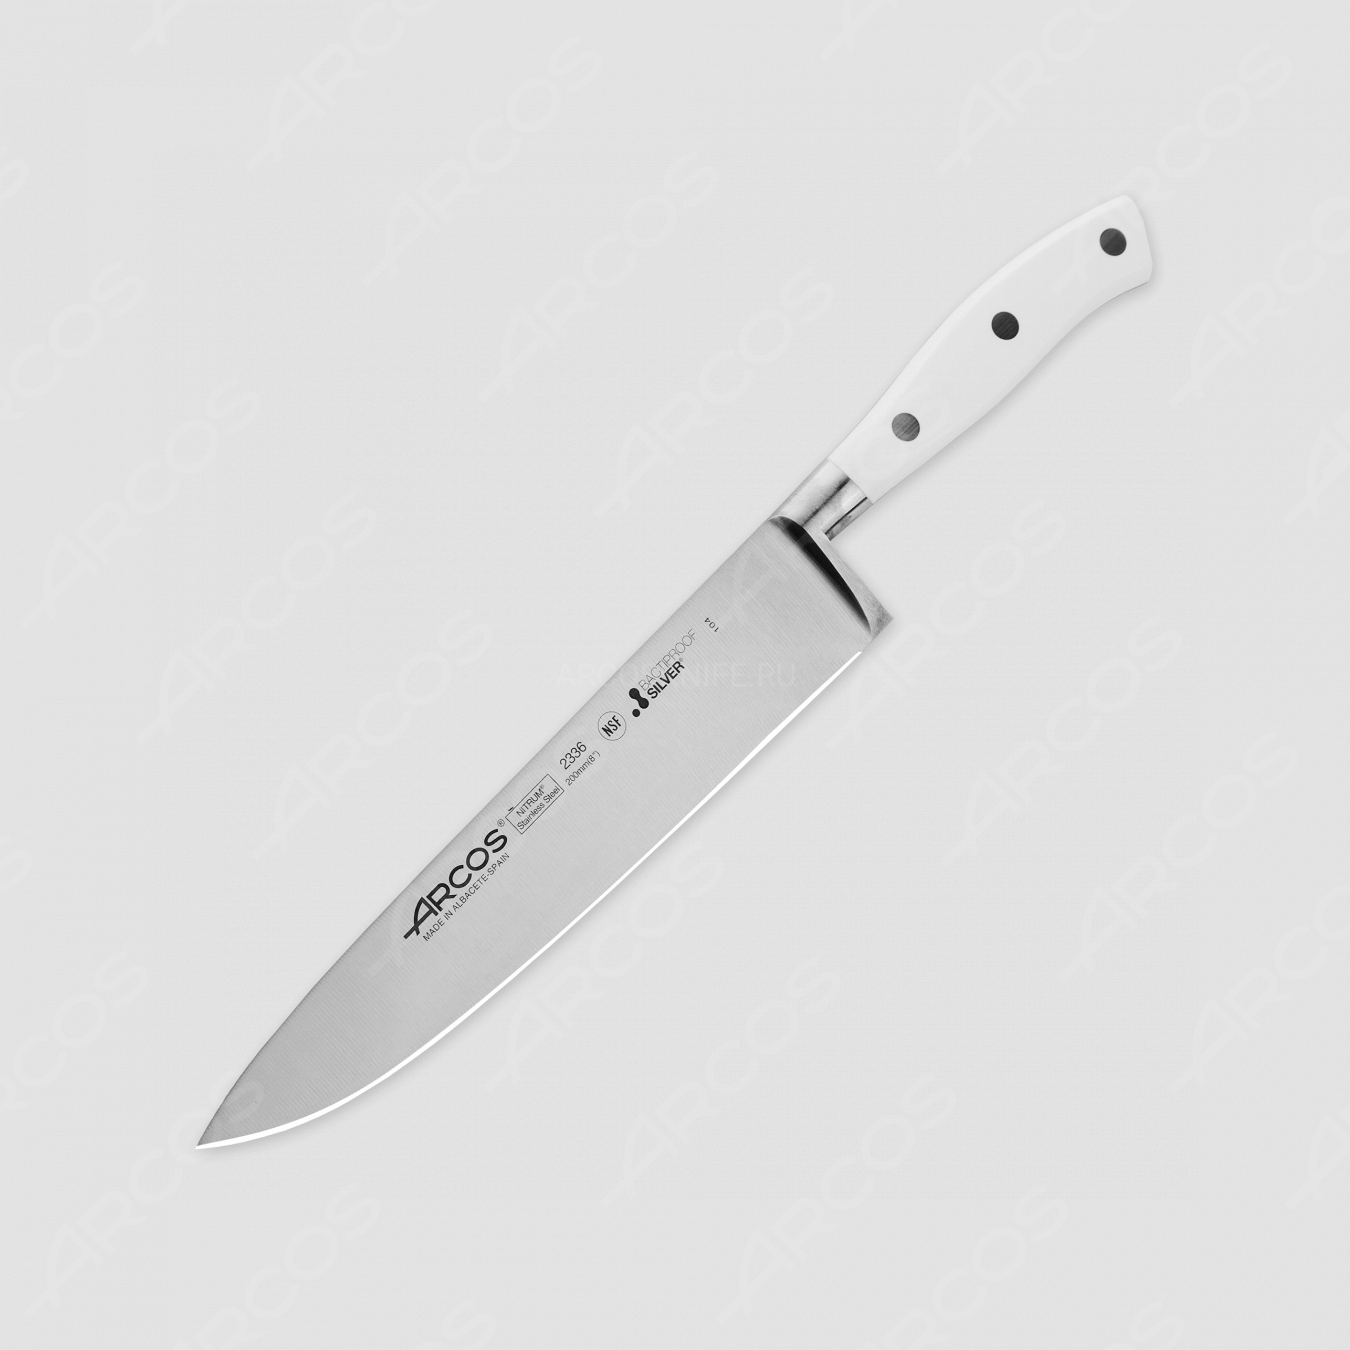 Профессиональный поварской кухонный нож 20 см, серия Riviera Blanca, ARCOS, Испания